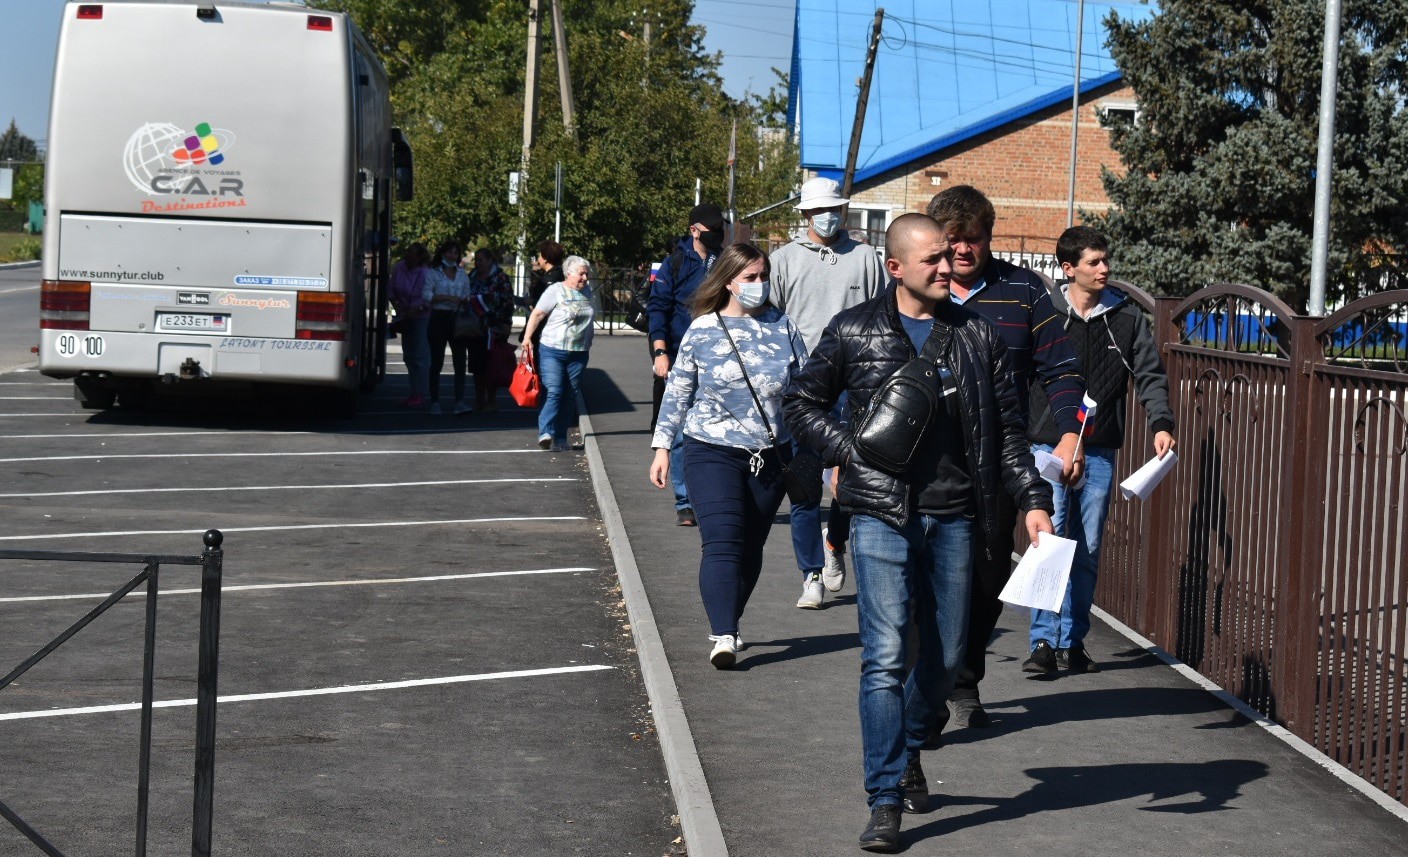 Жители ДНР идут от автобуса к избирательному участку. 18 сентября 2021 года. Фото Константина Волгина для "Кавказского узла"